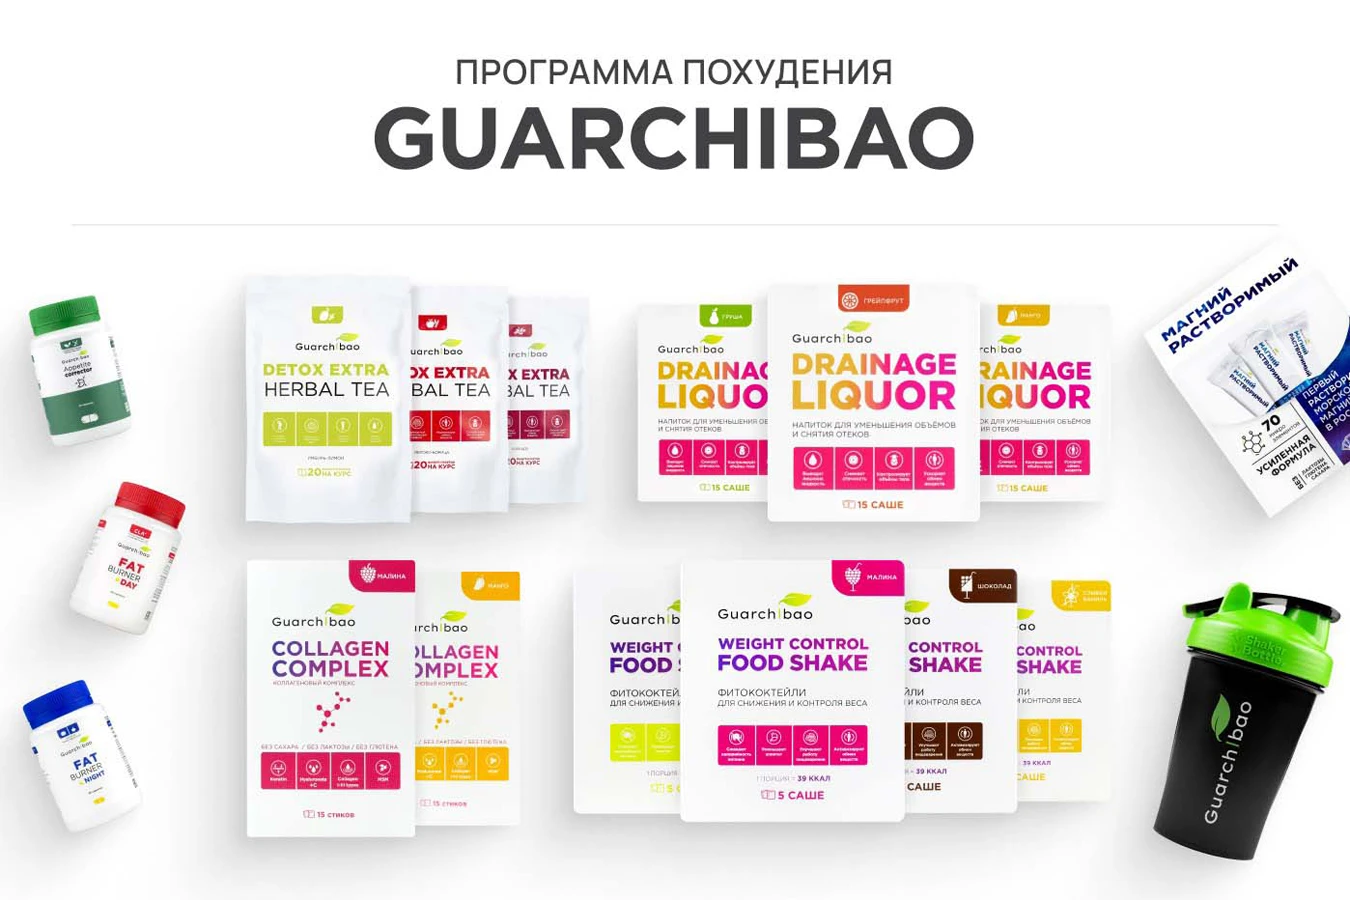 guarchibao программа похудения максимум